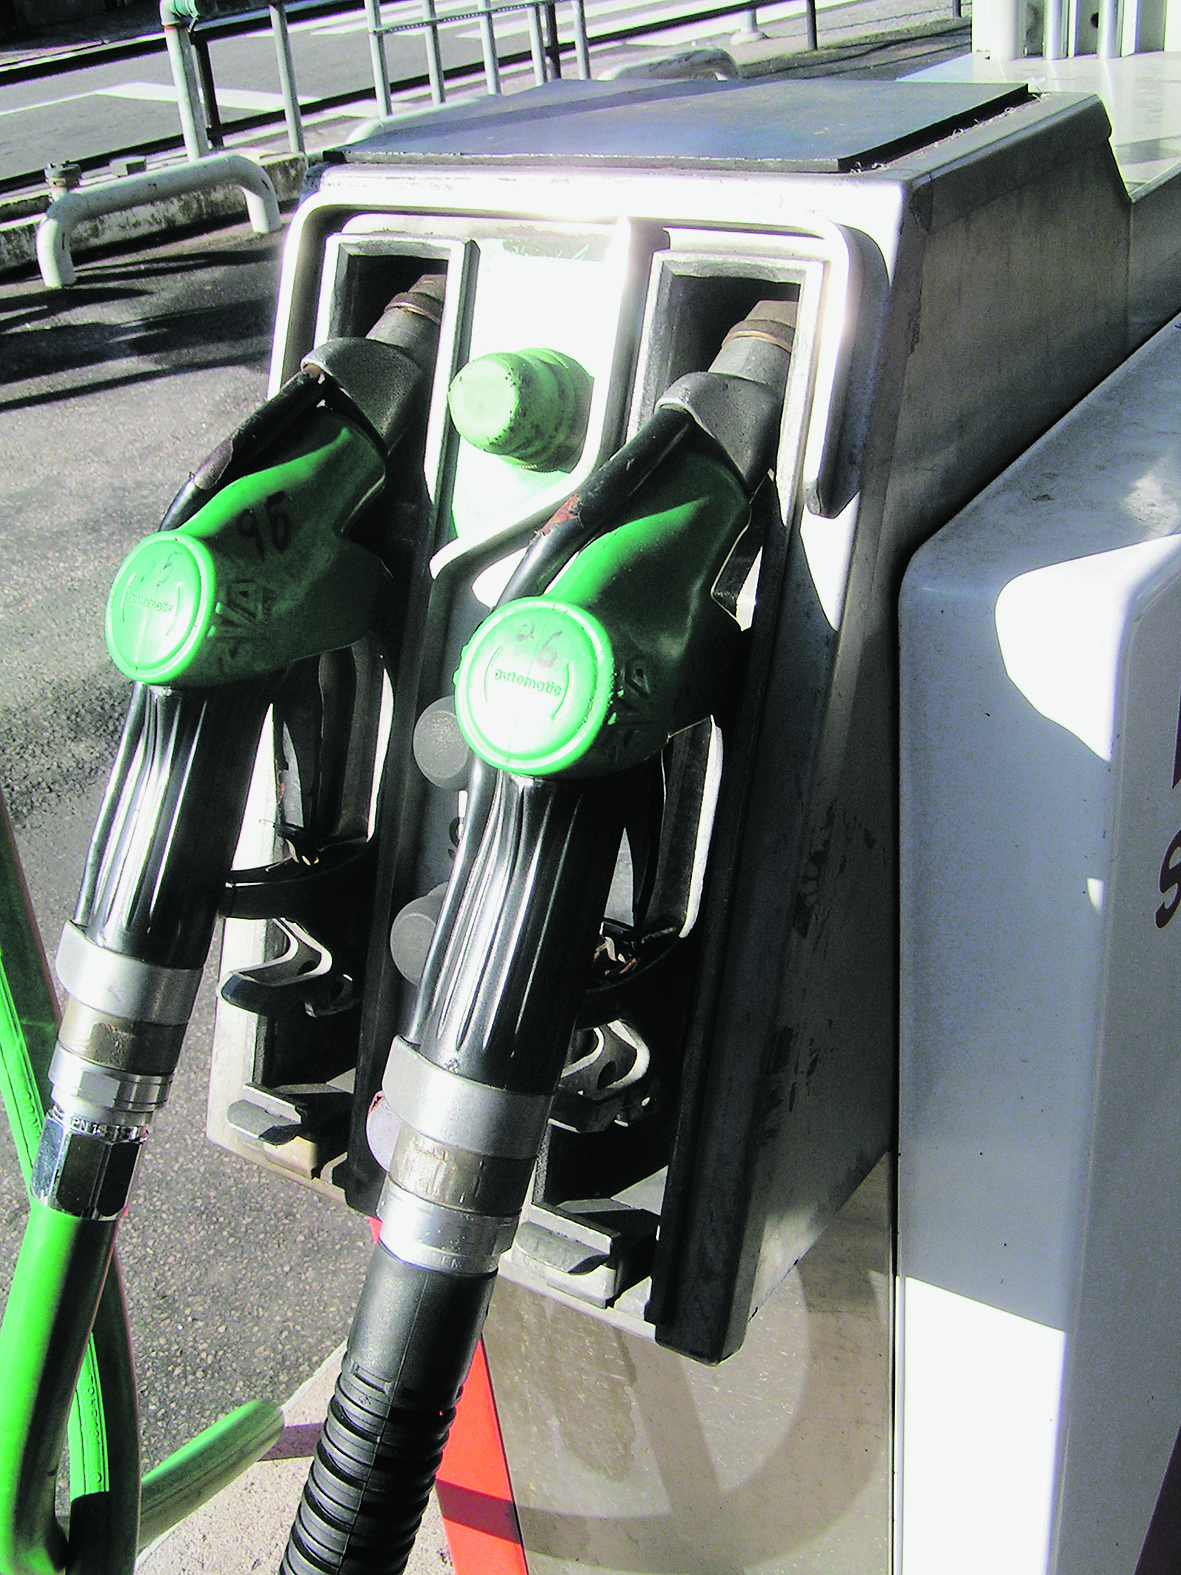 A gázolaj ára becslések szerint tartósan a benzin ára alatt marad